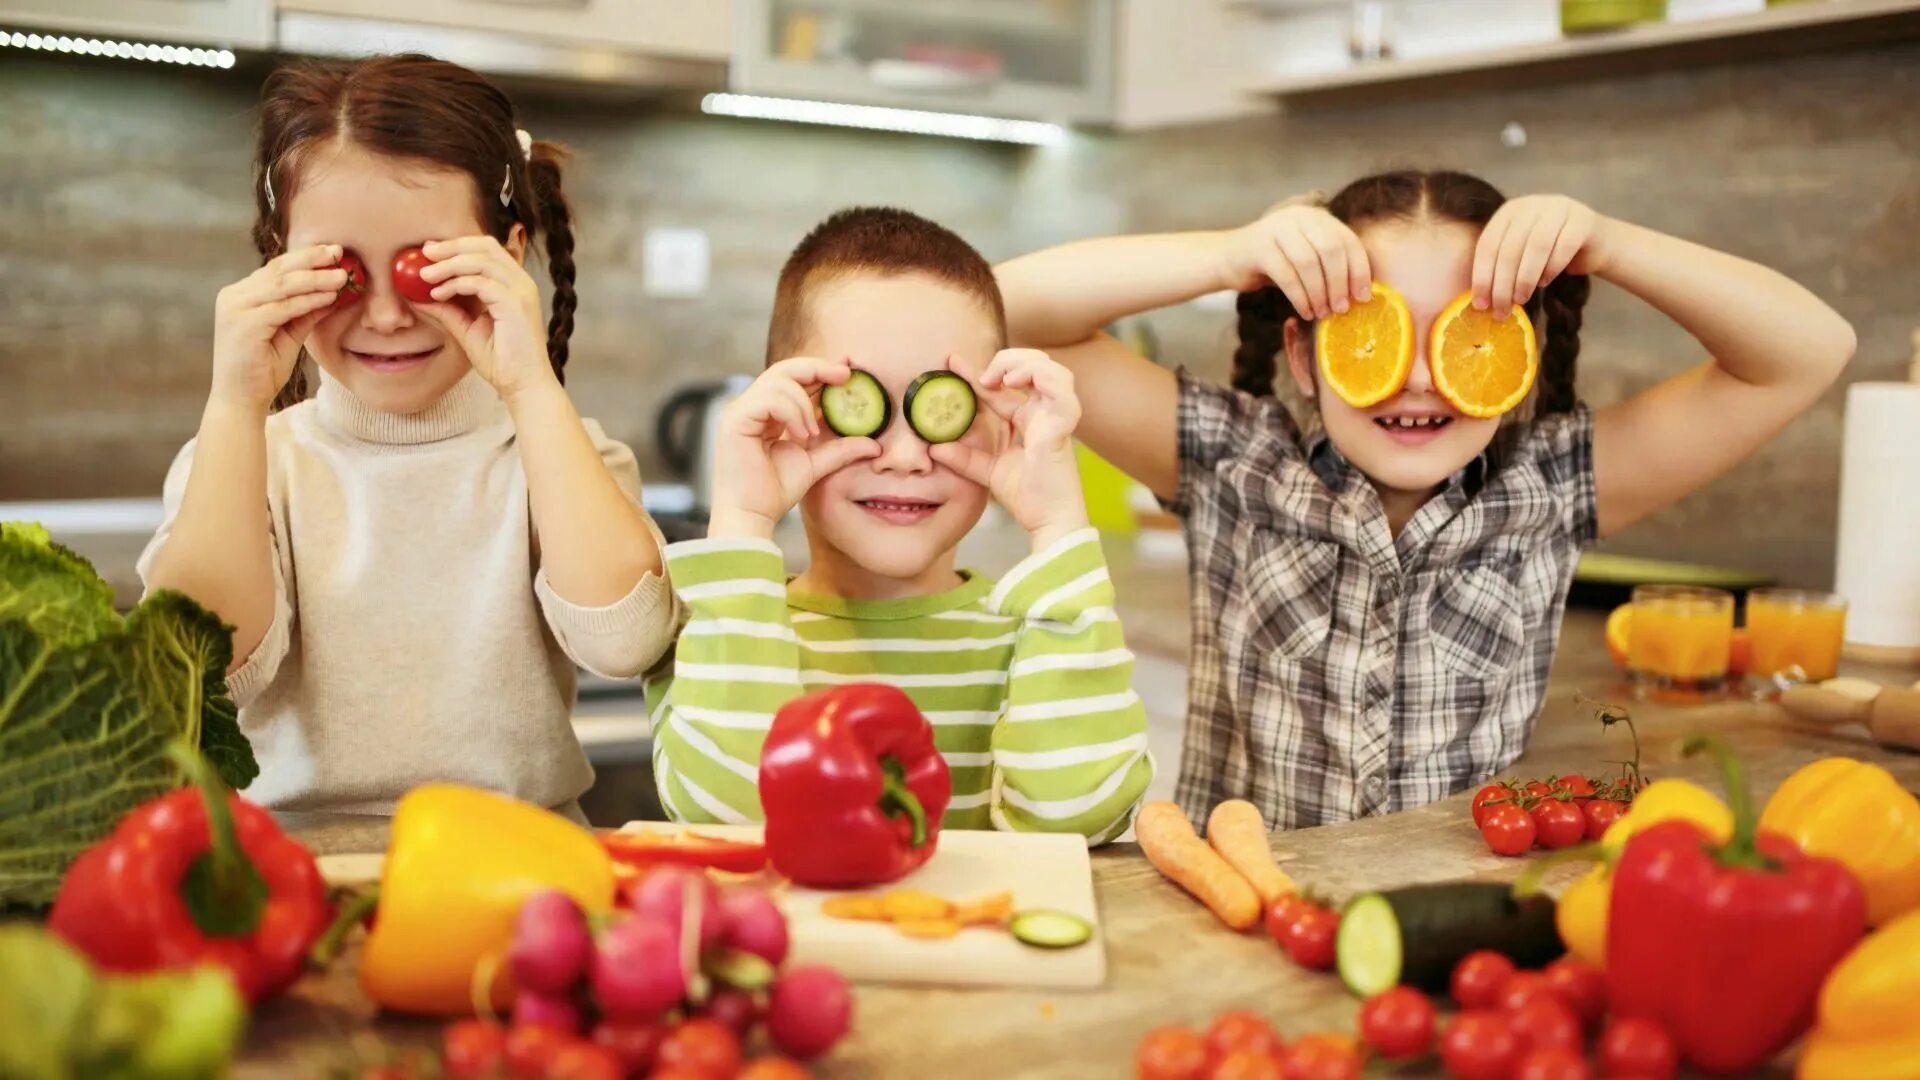 Овощи и фрукты для детей. Фрукты для детей. Еда для детей. Вегетарианство и дети. Дети веганы